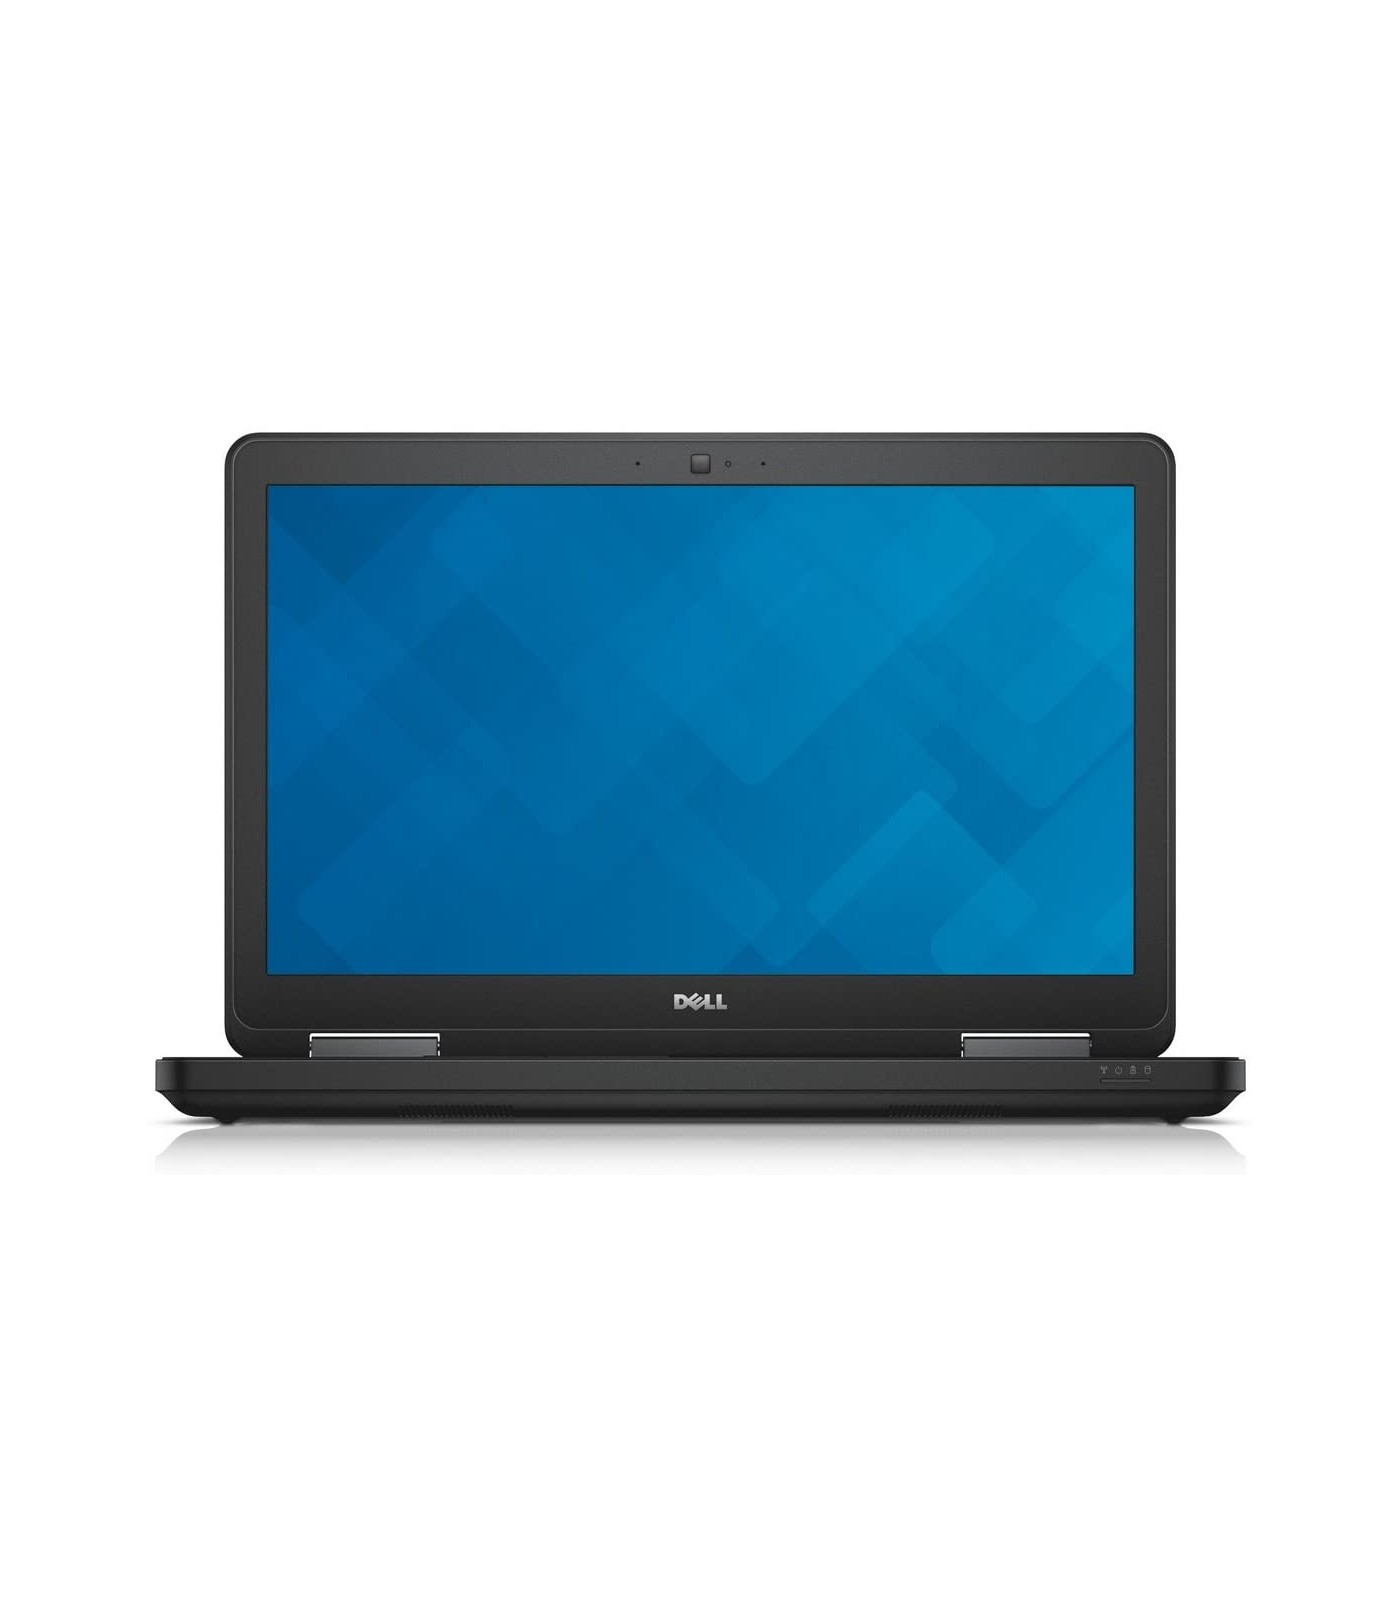 Poleasingowy laptop Dell Latitude E5540 z procesorem i5-4310U w klasie B